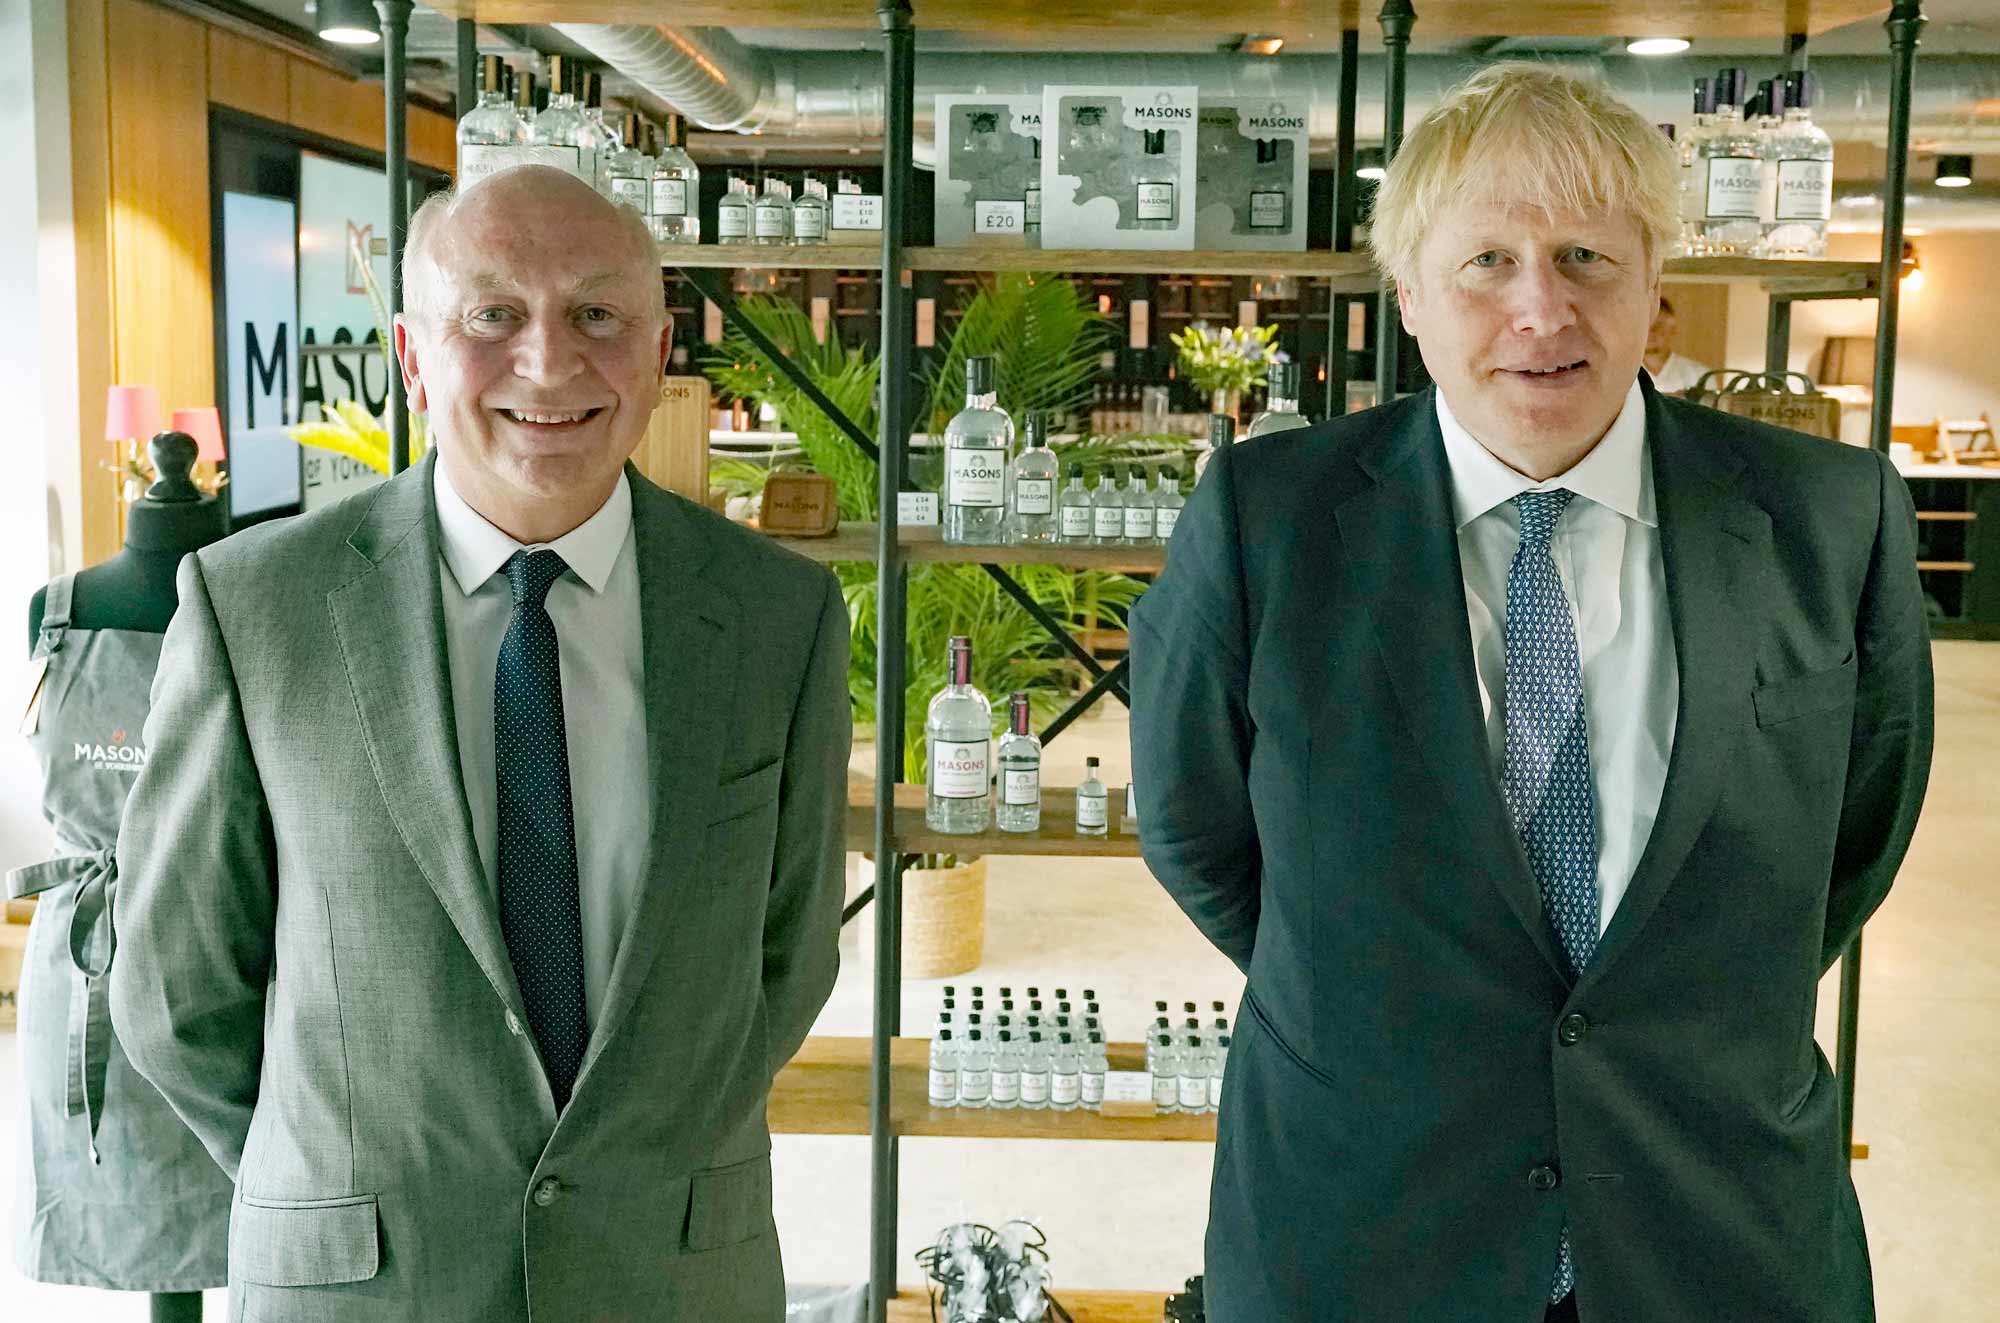 Philip Allott and Prime Minister Johnson